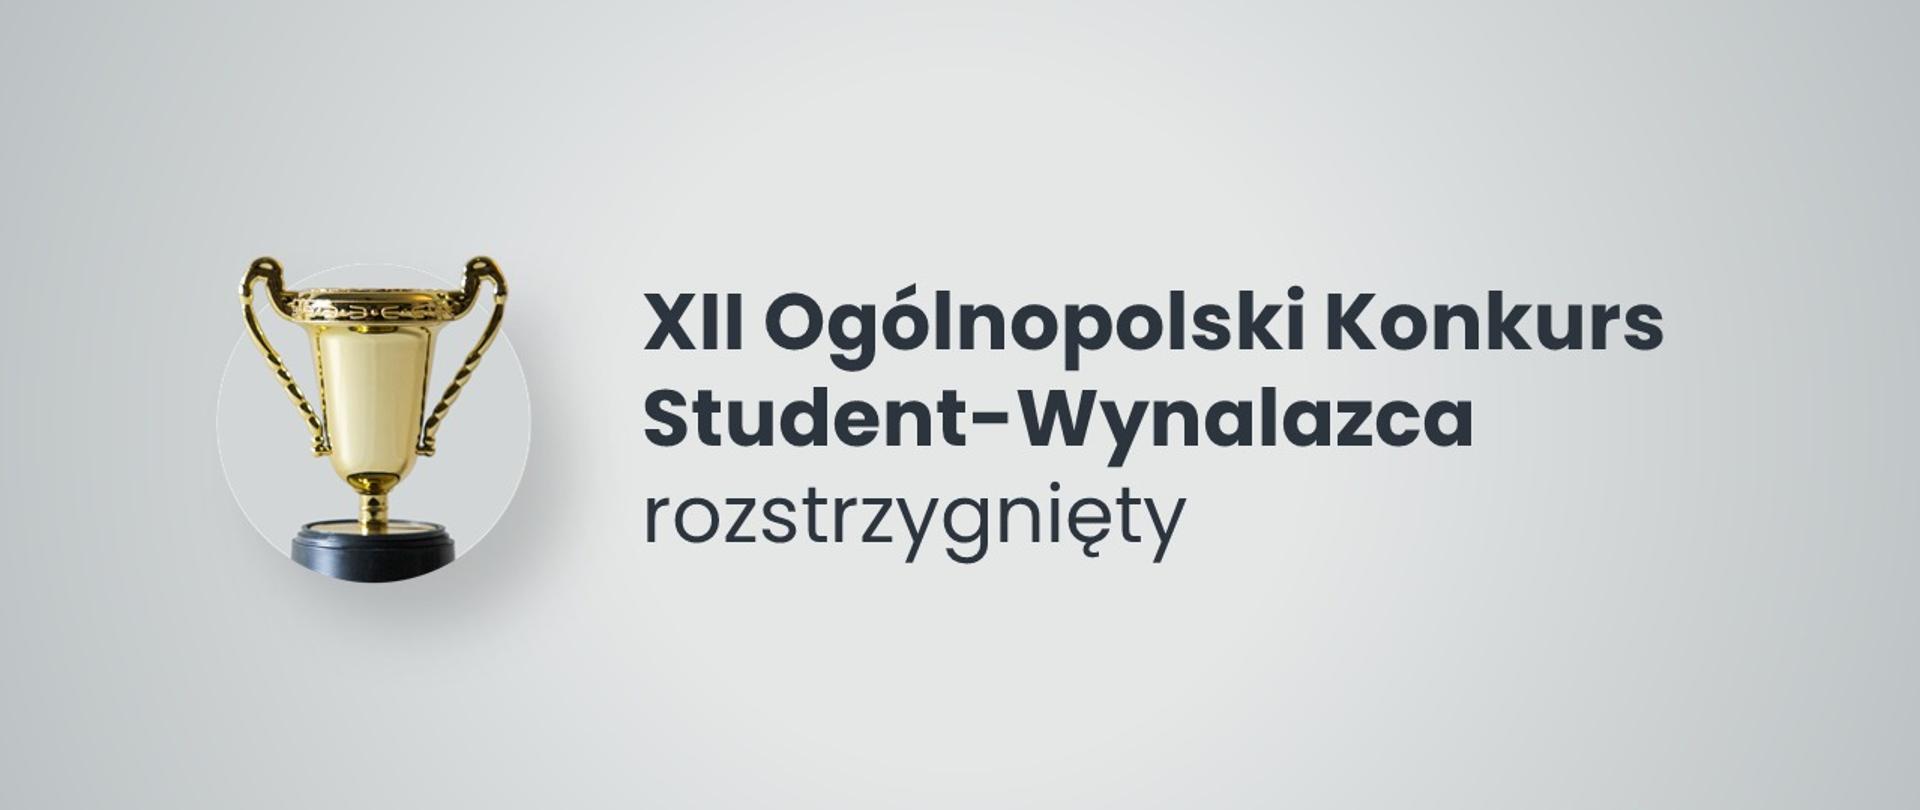 grafika do XII Ogólnopolskiego Konkursu Student-Wynalazca, na środku napis XII Ogólnopolski Konkurs Student-Wynalazca rozstrzygnięty, po lewej stronie puchar.